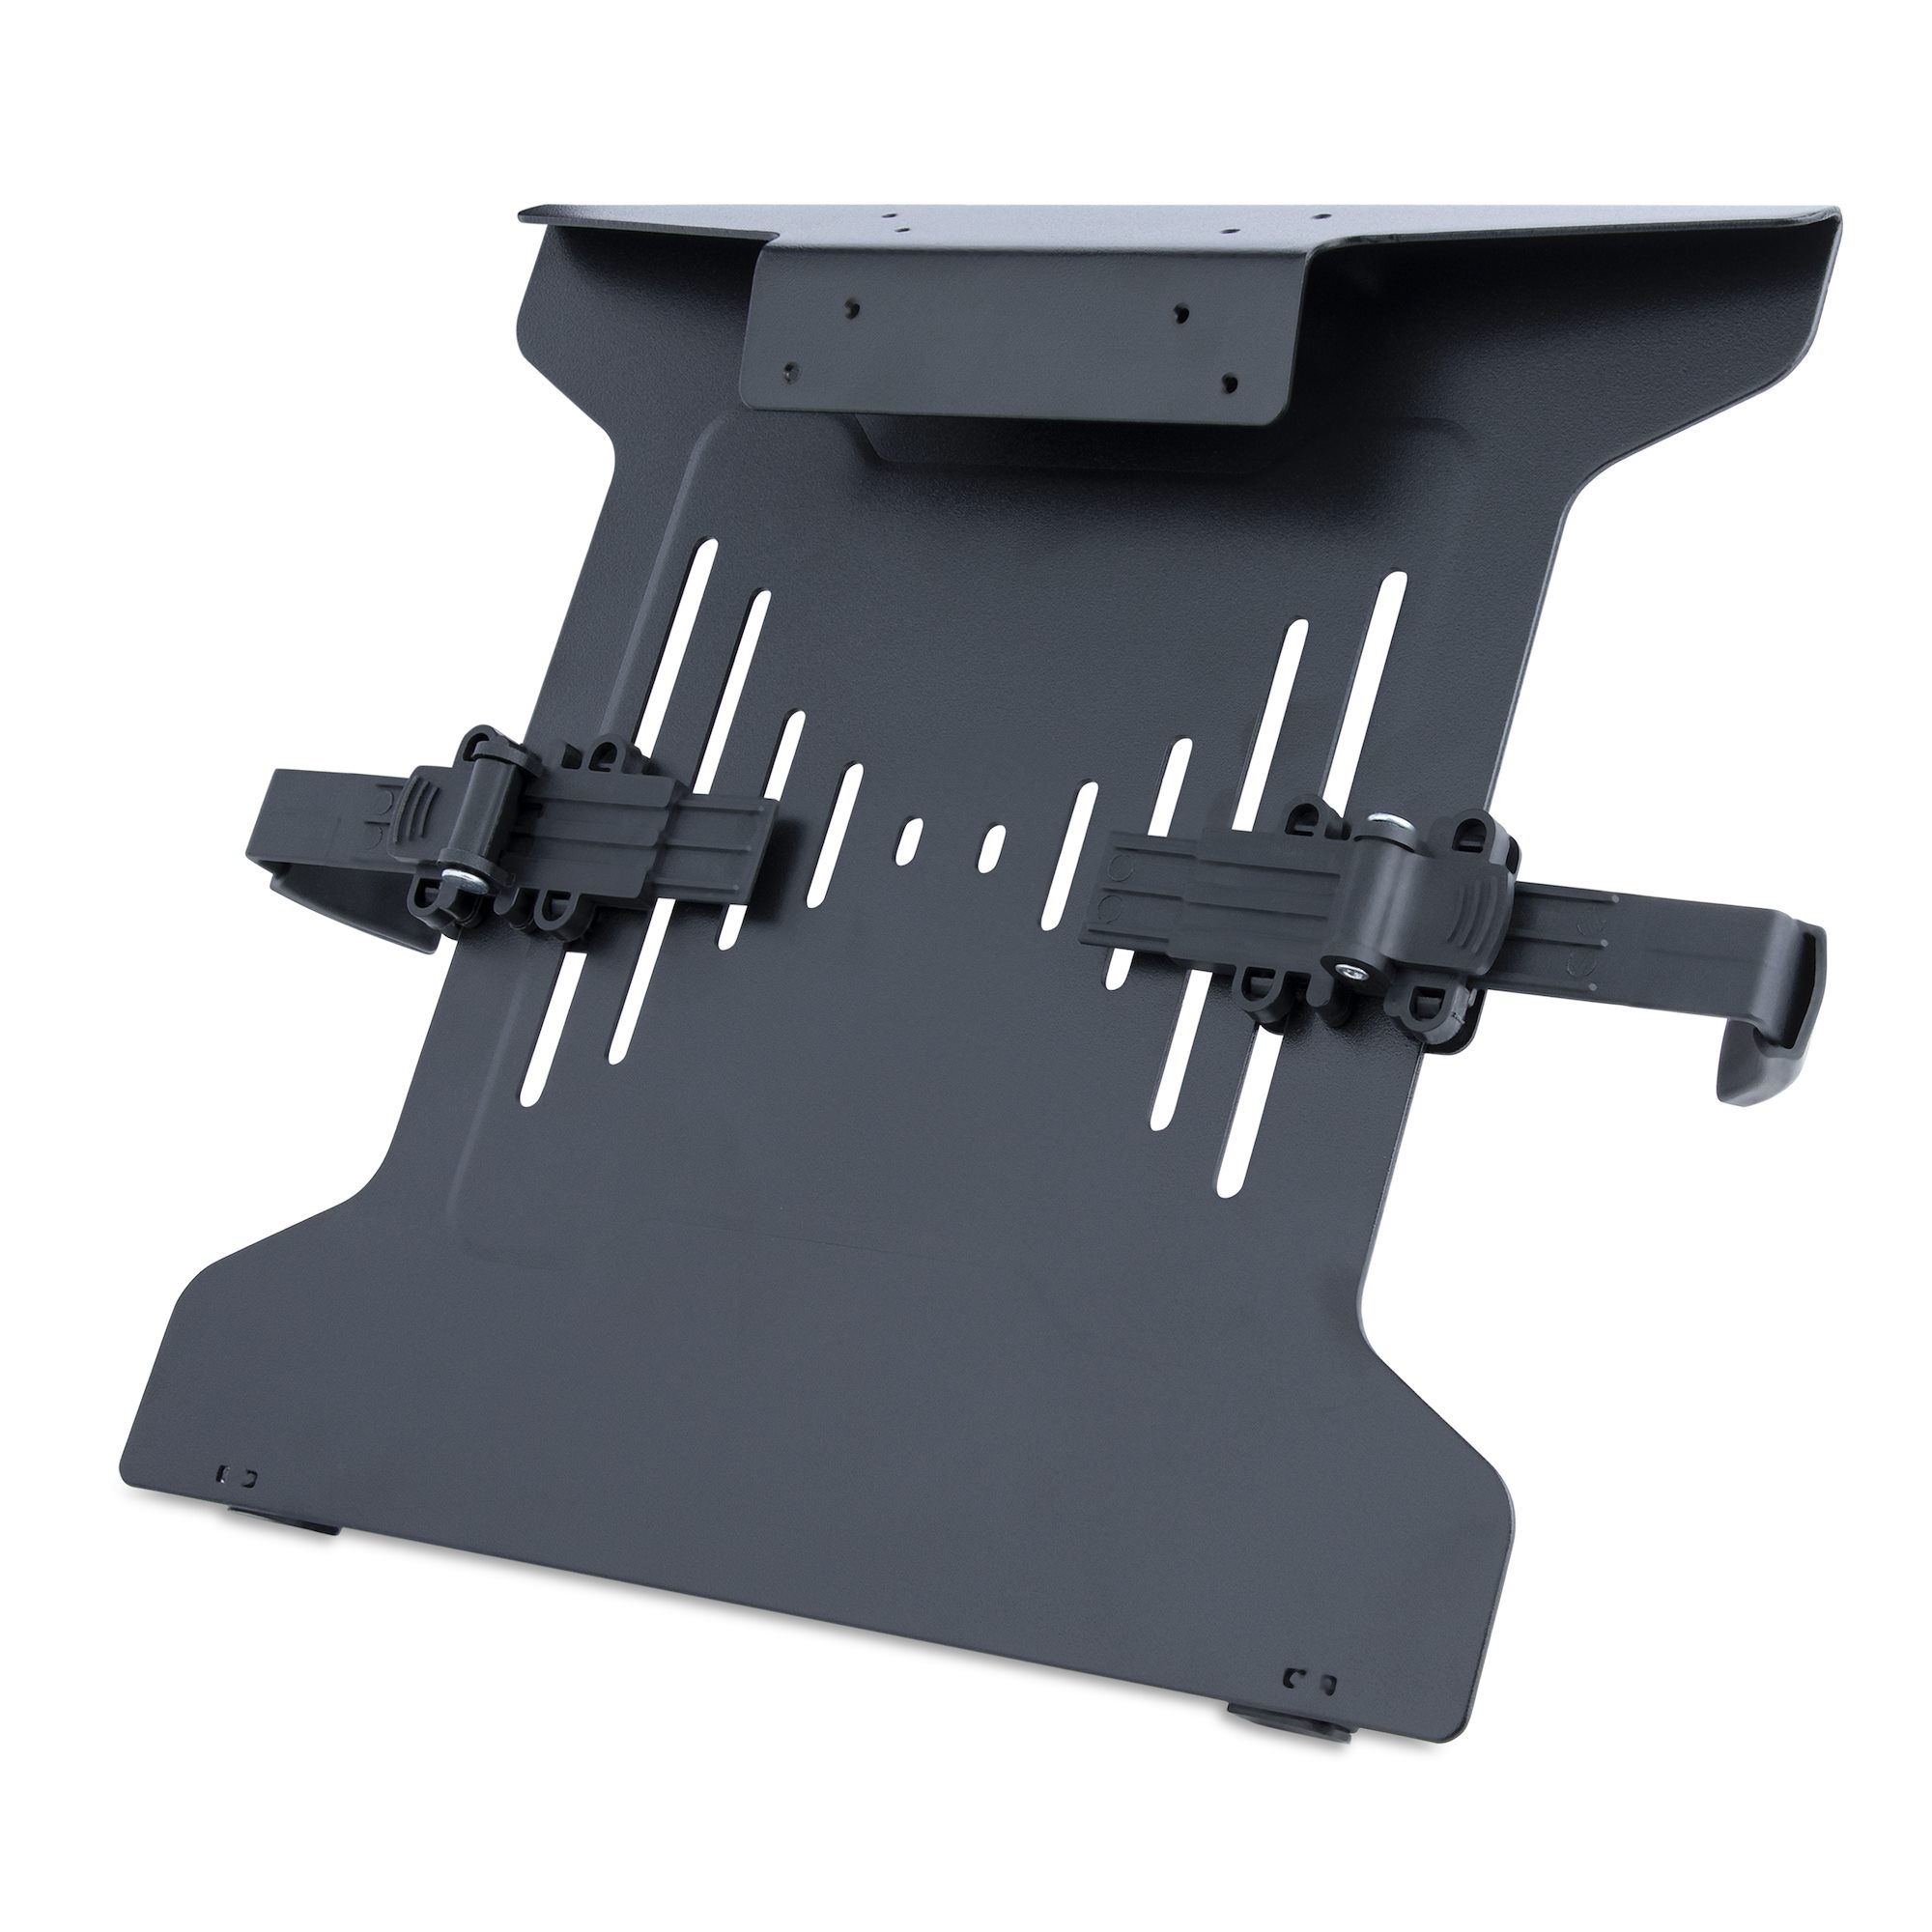 Einzel Monitor Halterung - Schwerlast Monitorarm für VESA-Bildschirme bis  zu 34 (8kg) - Ergonomischer Höhenverstellbarer Displayarm - Tischklemme